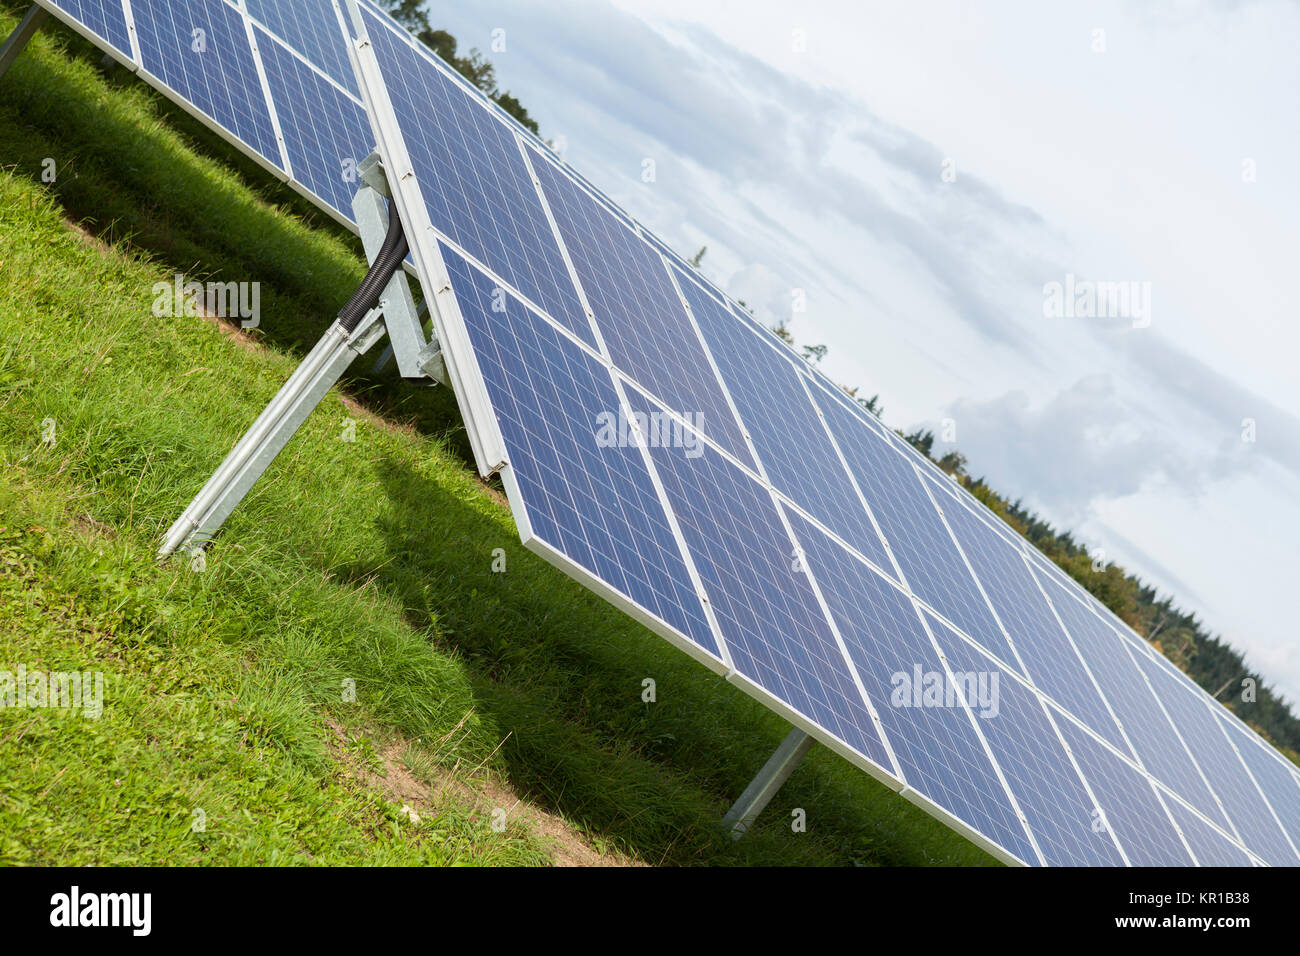 Solarzellen in einem Solarpark auf grüner wiese zur Stromerzeugung Stock Photo